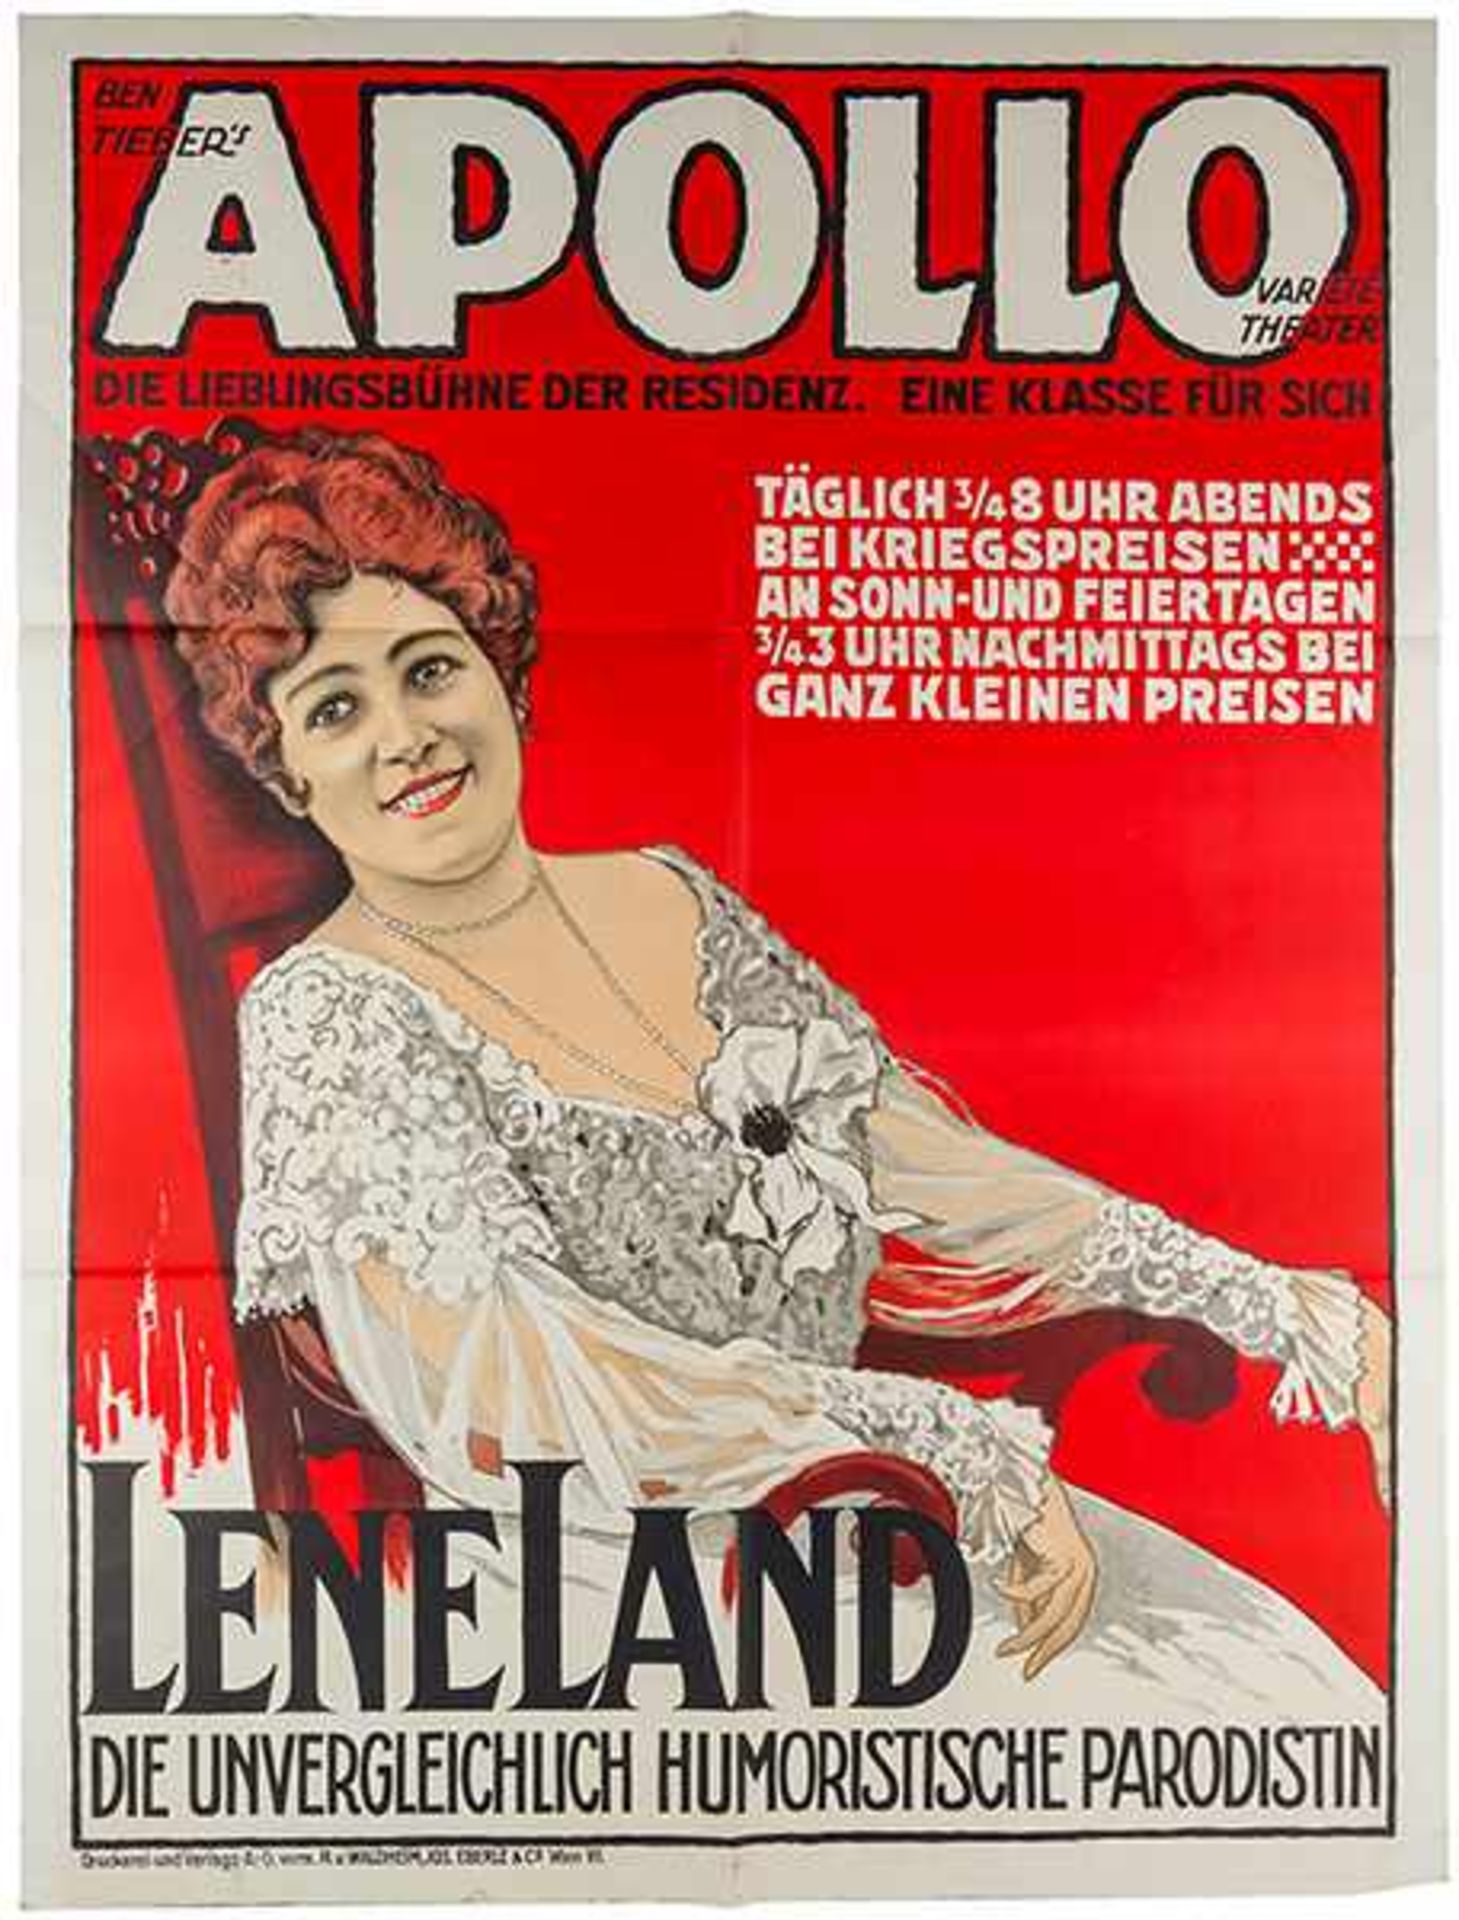 Plakate - - Ben Tiebers Apollo: Lene Land. Die unvergleichlich humoristische Parodistin. Farbig